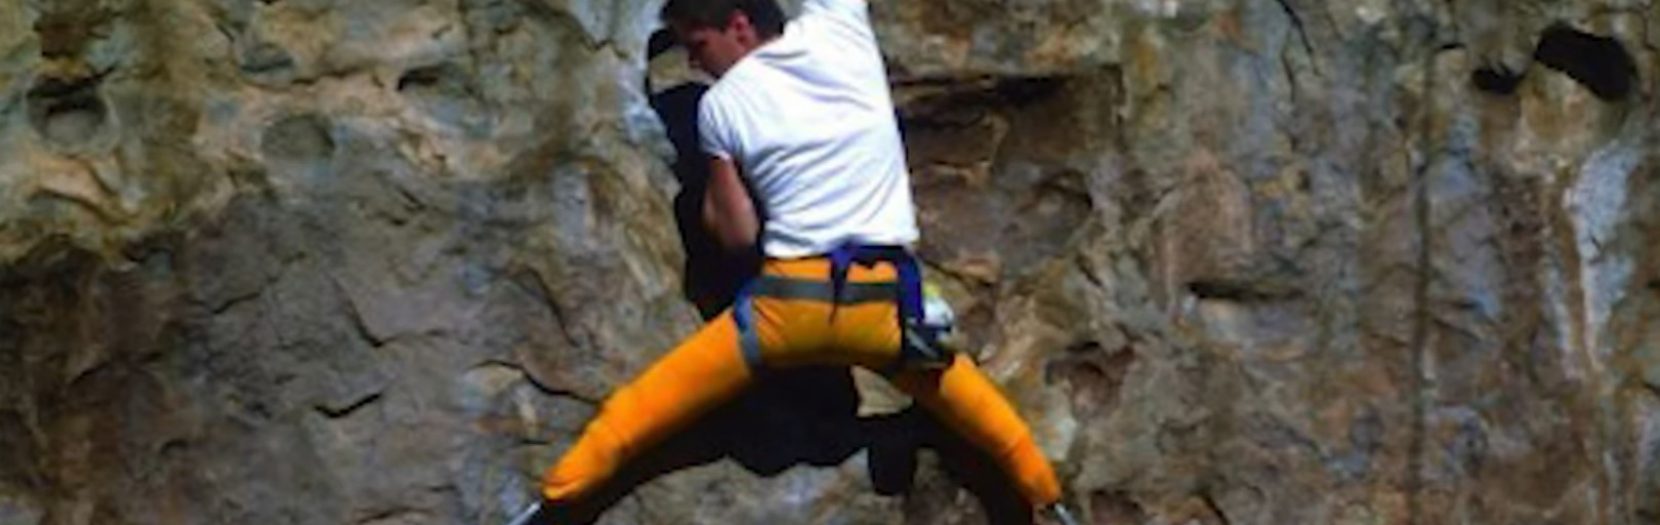 hugh-herr-rock-climbing-featured